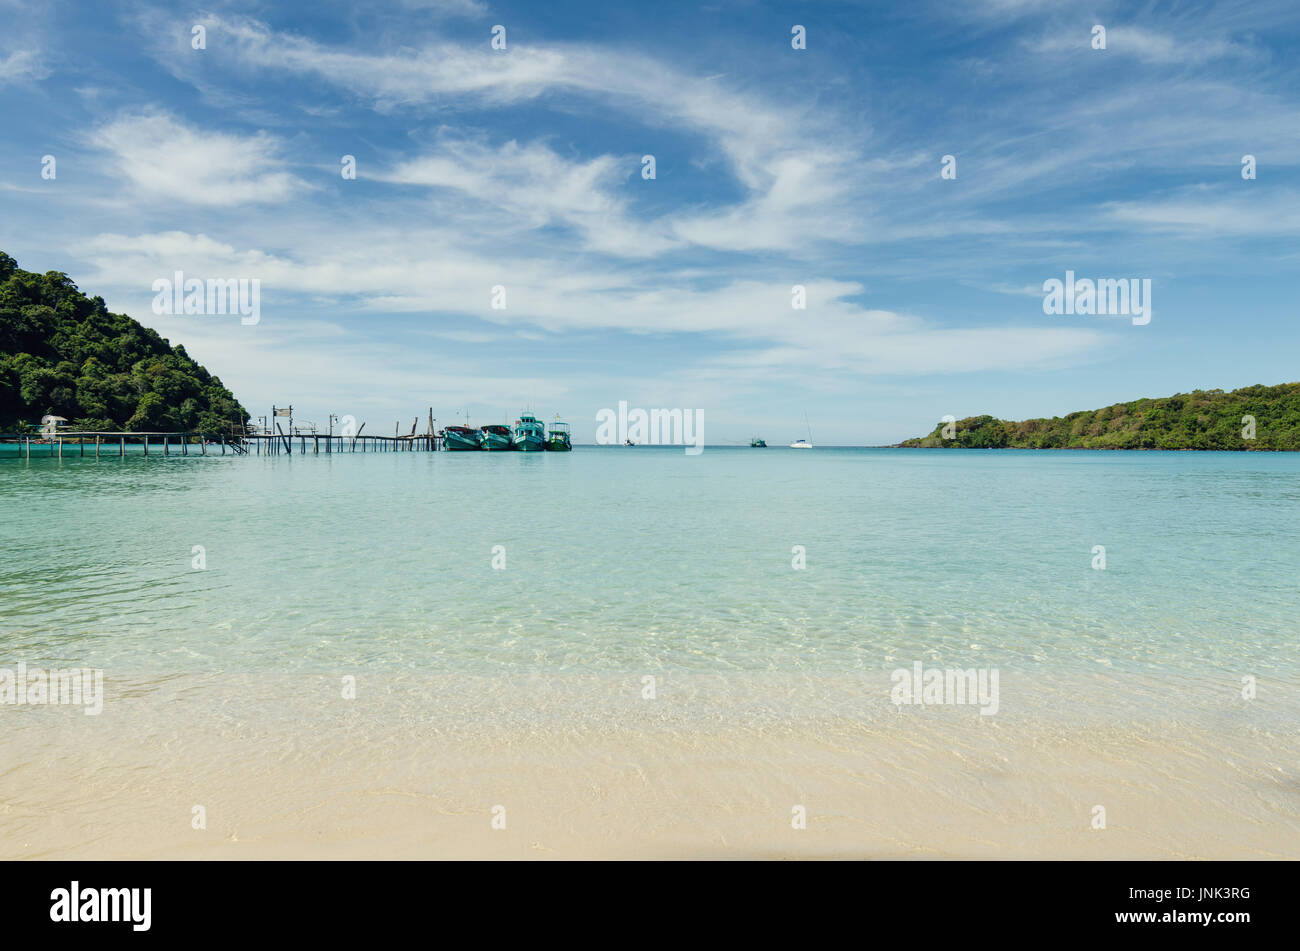 Plage tropicale avec bateaux et yacht en mer d'Andaman à Phuket, Thaïlande. L'été, les voyages, vacances et maison de vacances concept. Banque D'Images